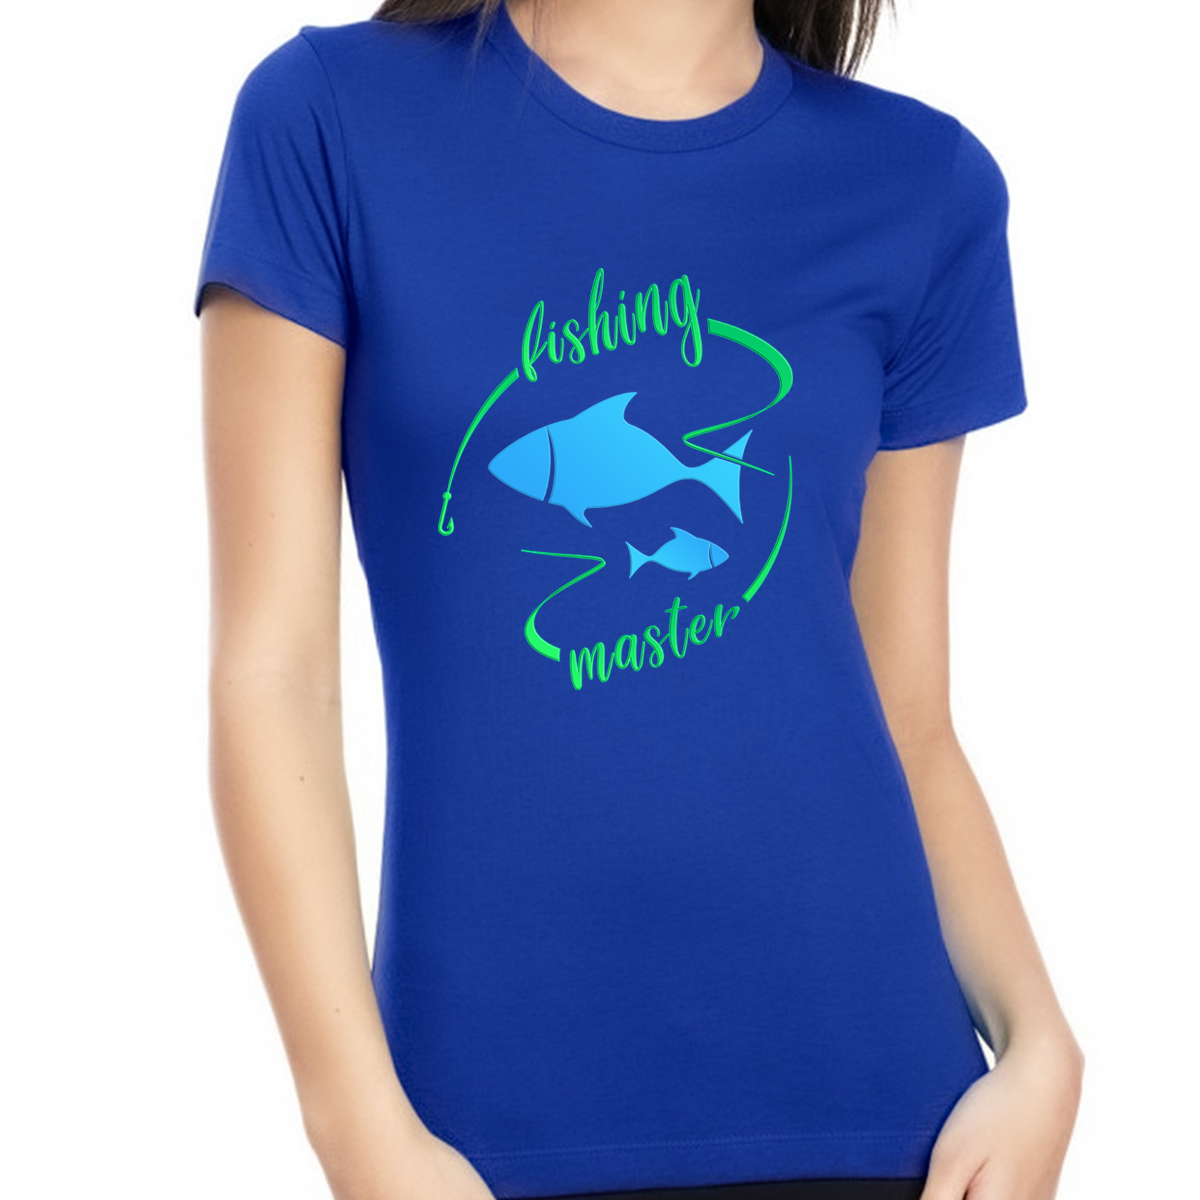 Fishing Shirt - Fishing Shirts for Women - Womens Fishing Shirts - Fishing Master T-Shirt - Fishing Gift Shirt Royal / XL